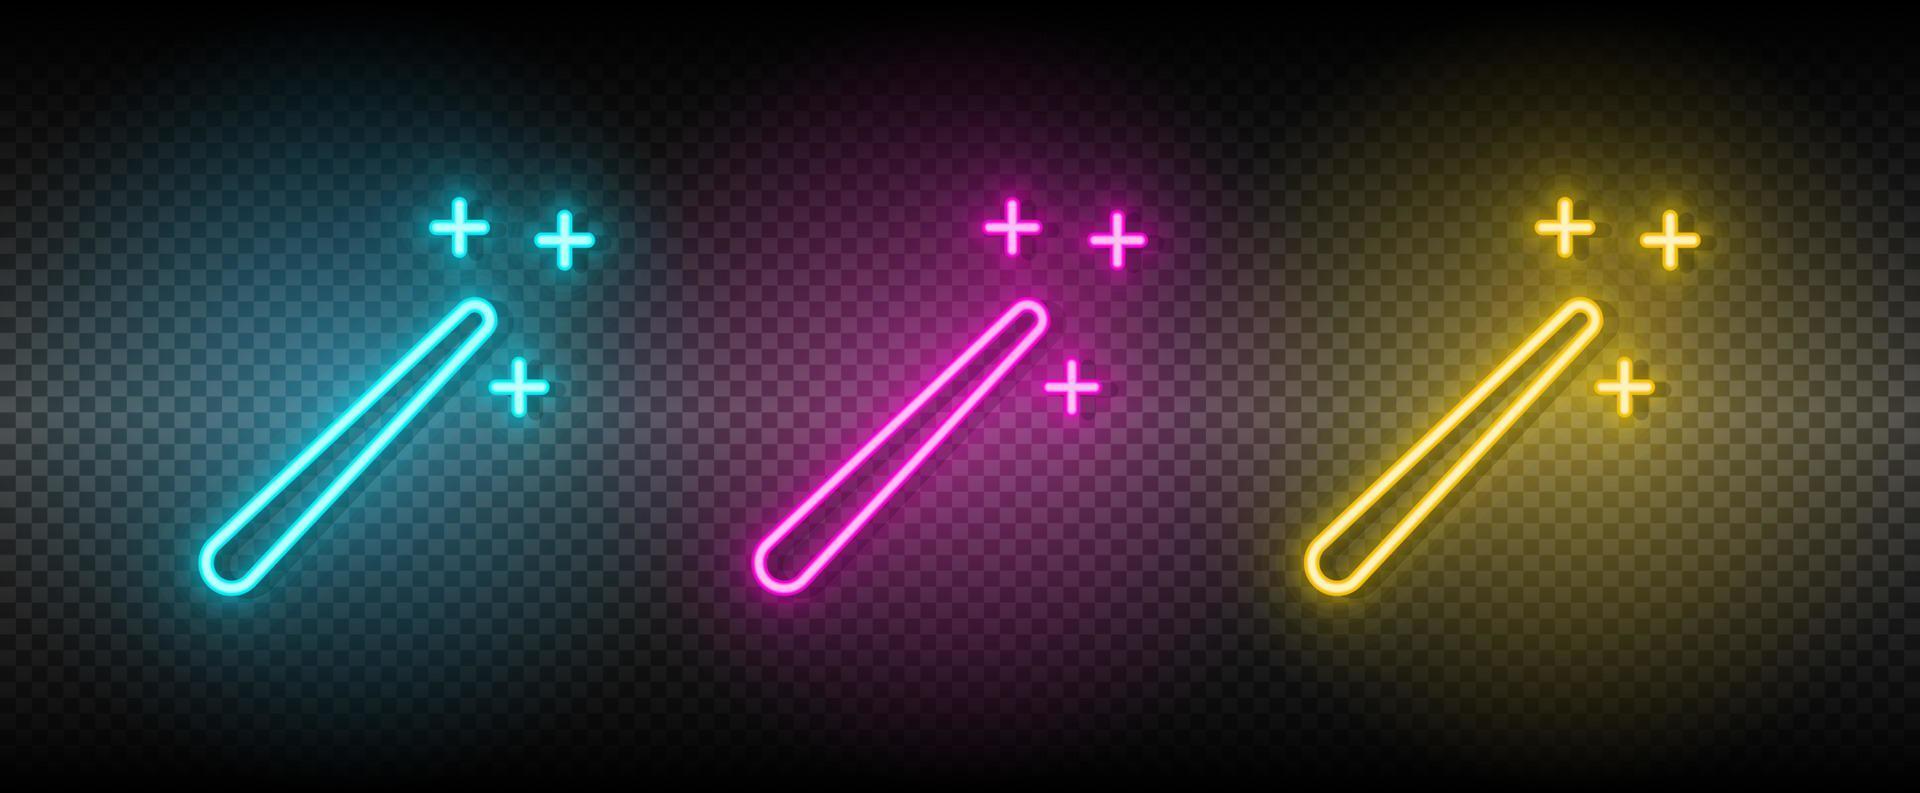 magi, pinne, trollkarl vektor ikon gul, rosa, blå neon uppsättning. verktyg vektor ikon på mörk genomskinlighet bakgrund